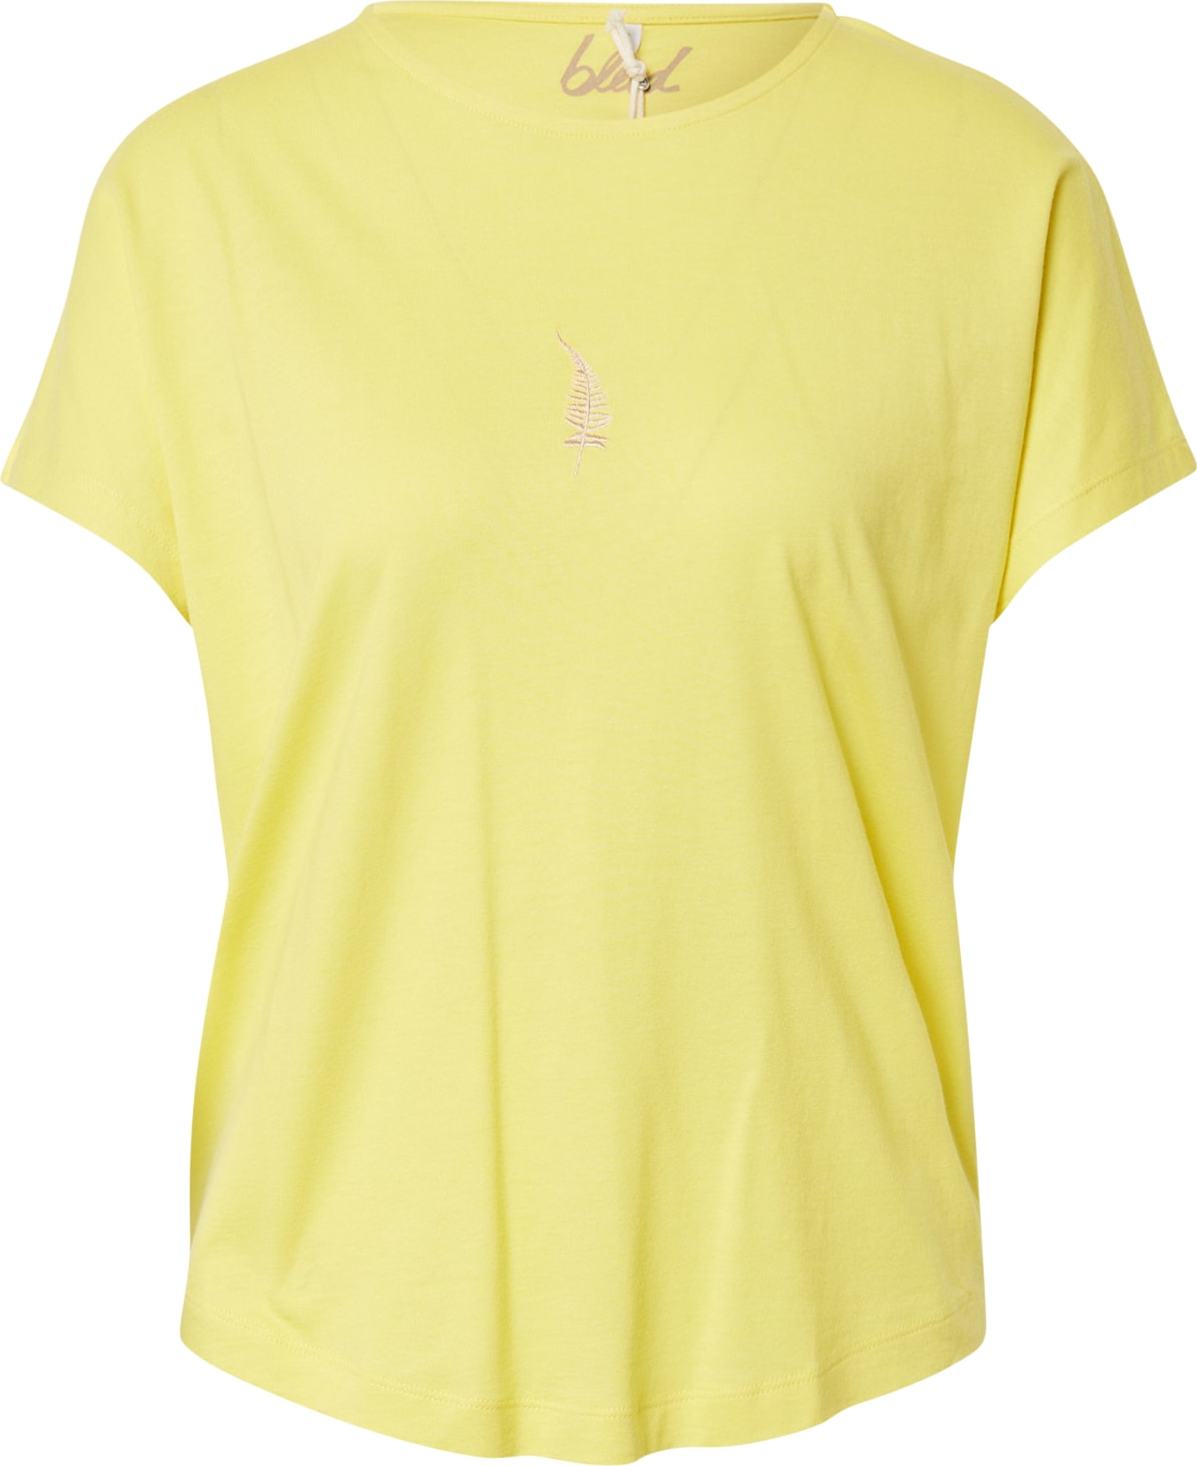 bleed clothing T-Shirt žlutá / pastelová fialová